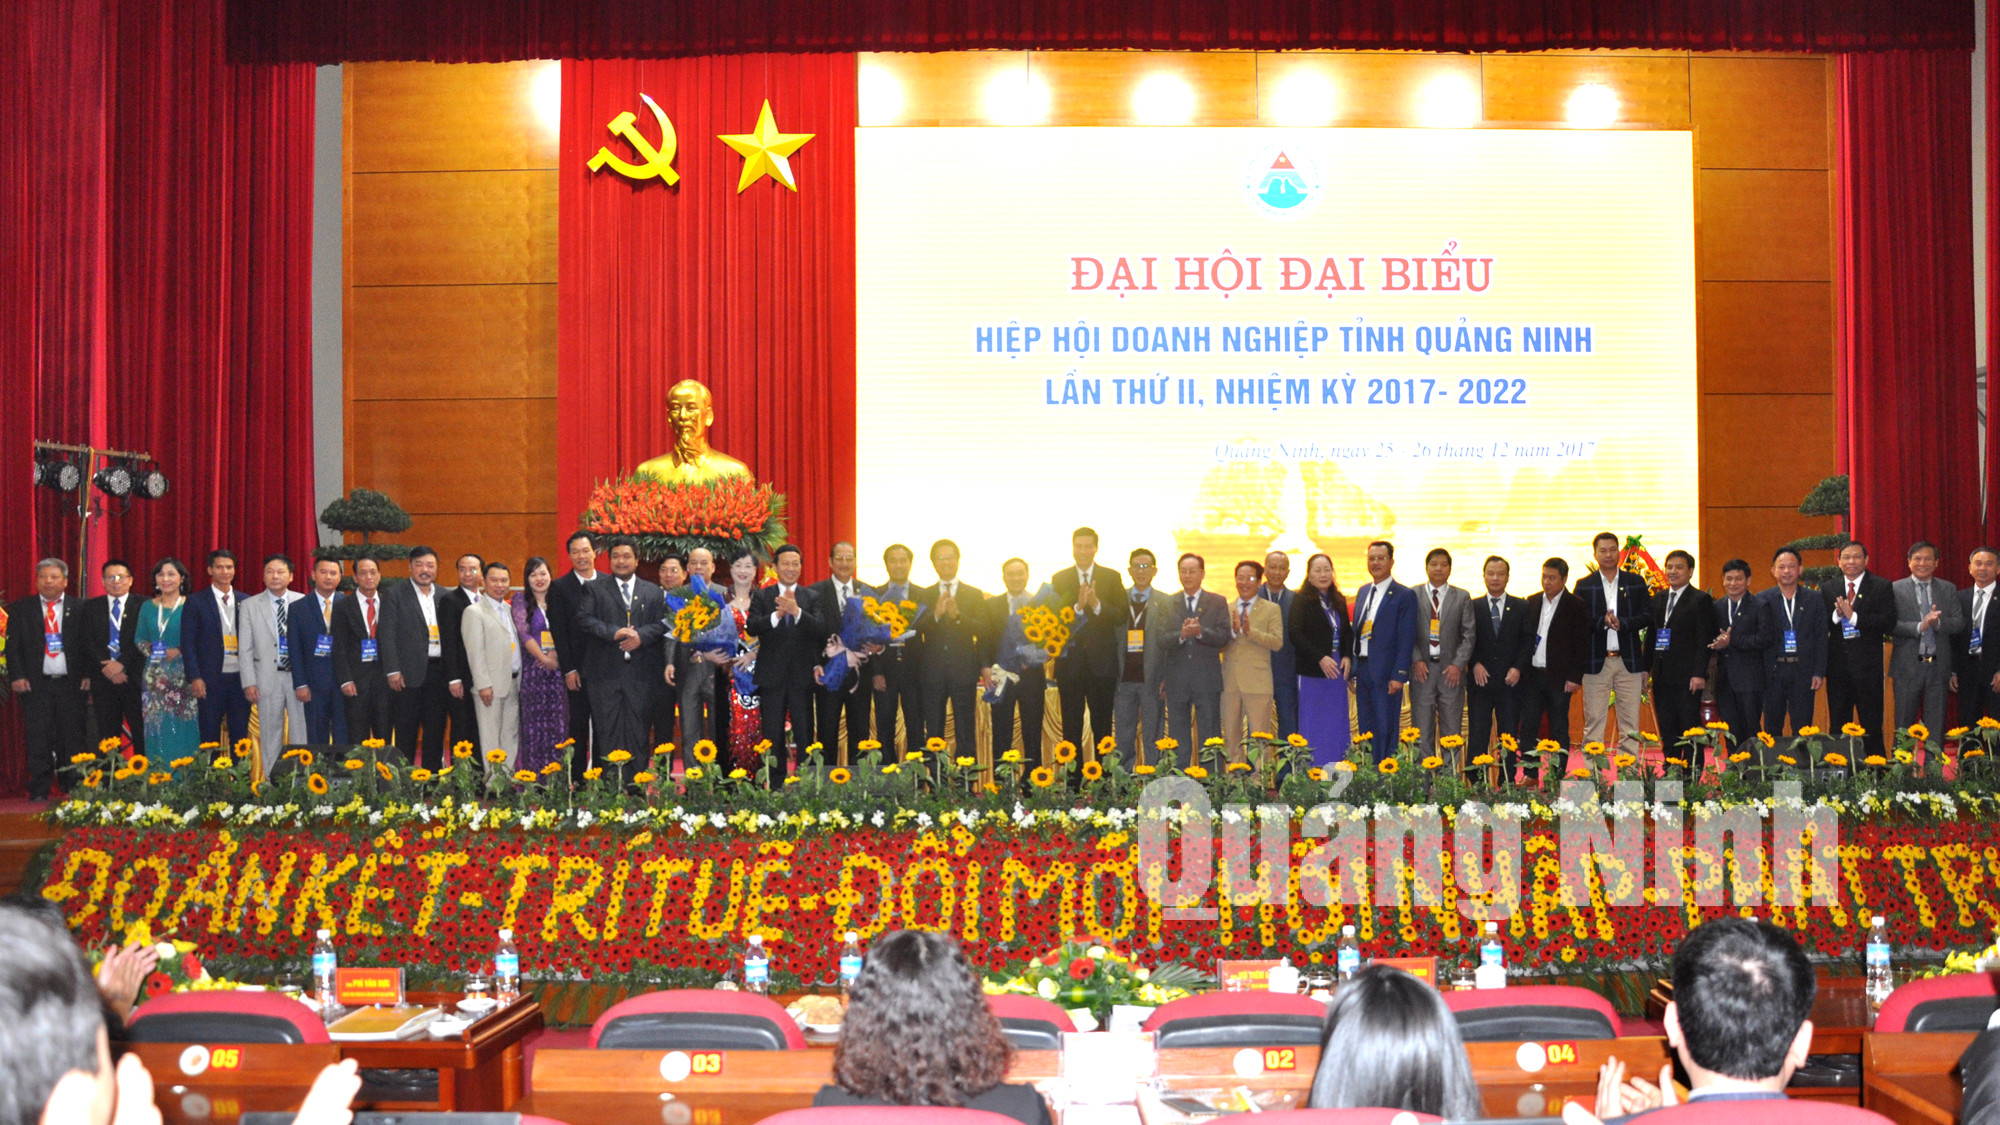 Các đồng chí lãnh đạo tỉnh, lãnh đạo VCCI Việt Nam tặng hoa chúc mừng BCH Hiệp hội doanh nghiệp tỉnh khóa mới ra mắt.